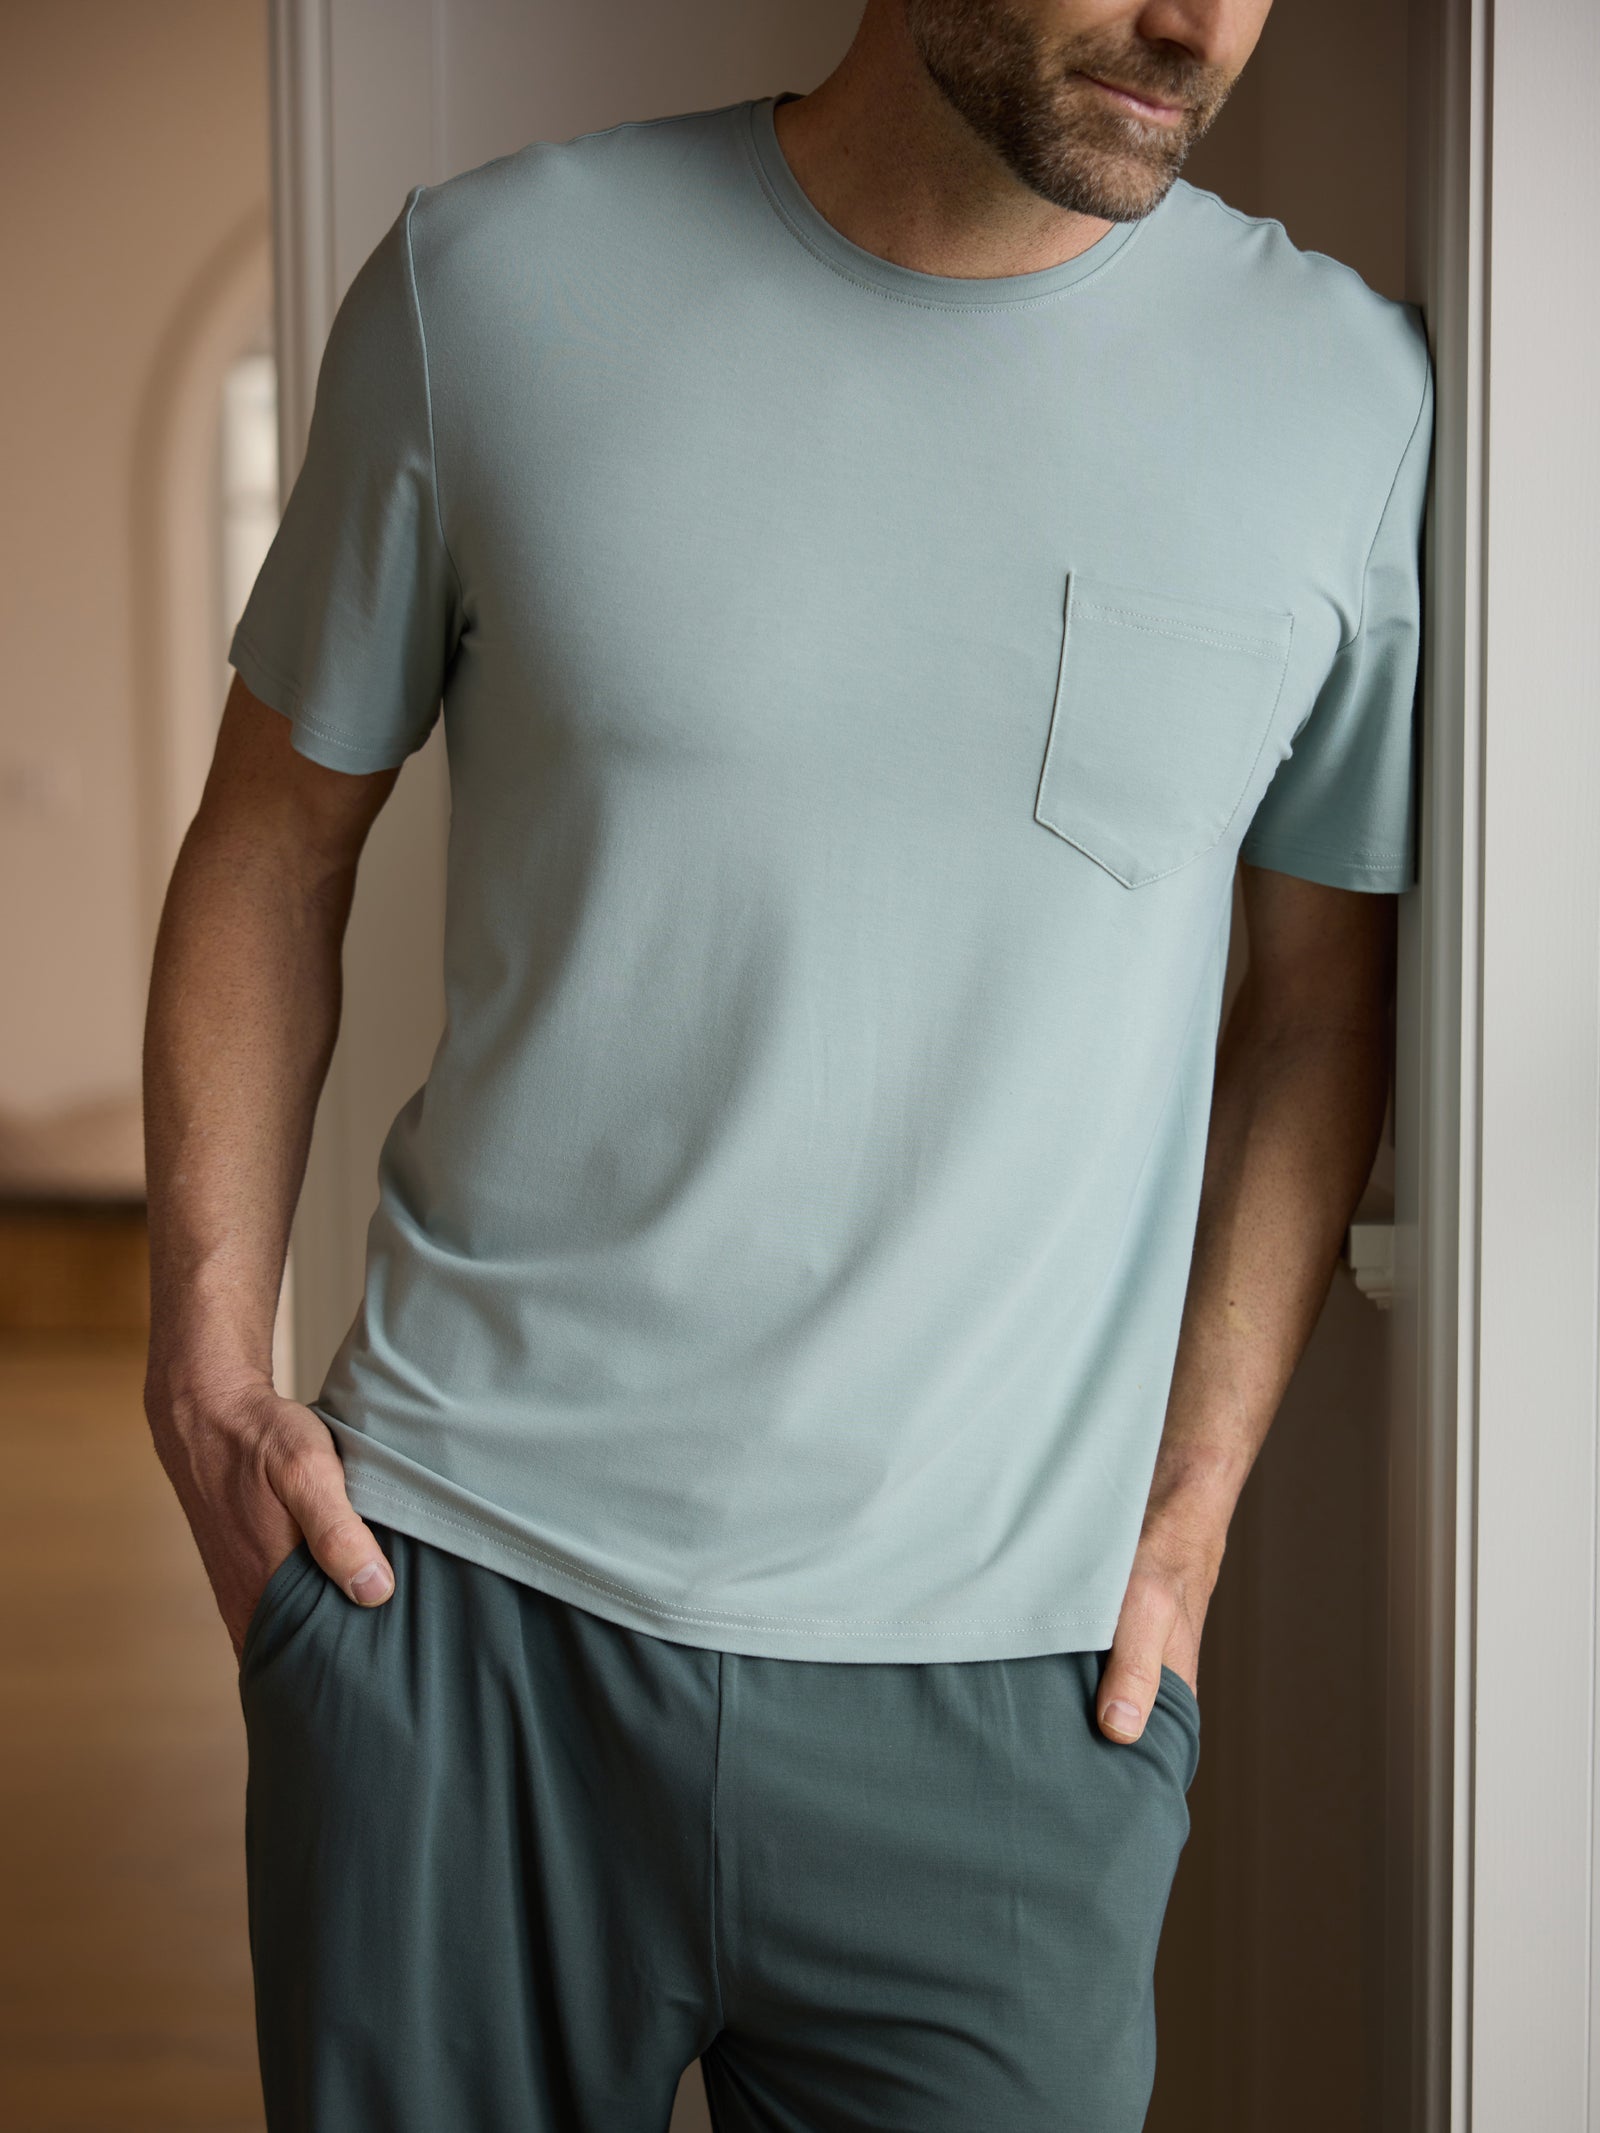 Man wearing haze pajama shirt in hallway 